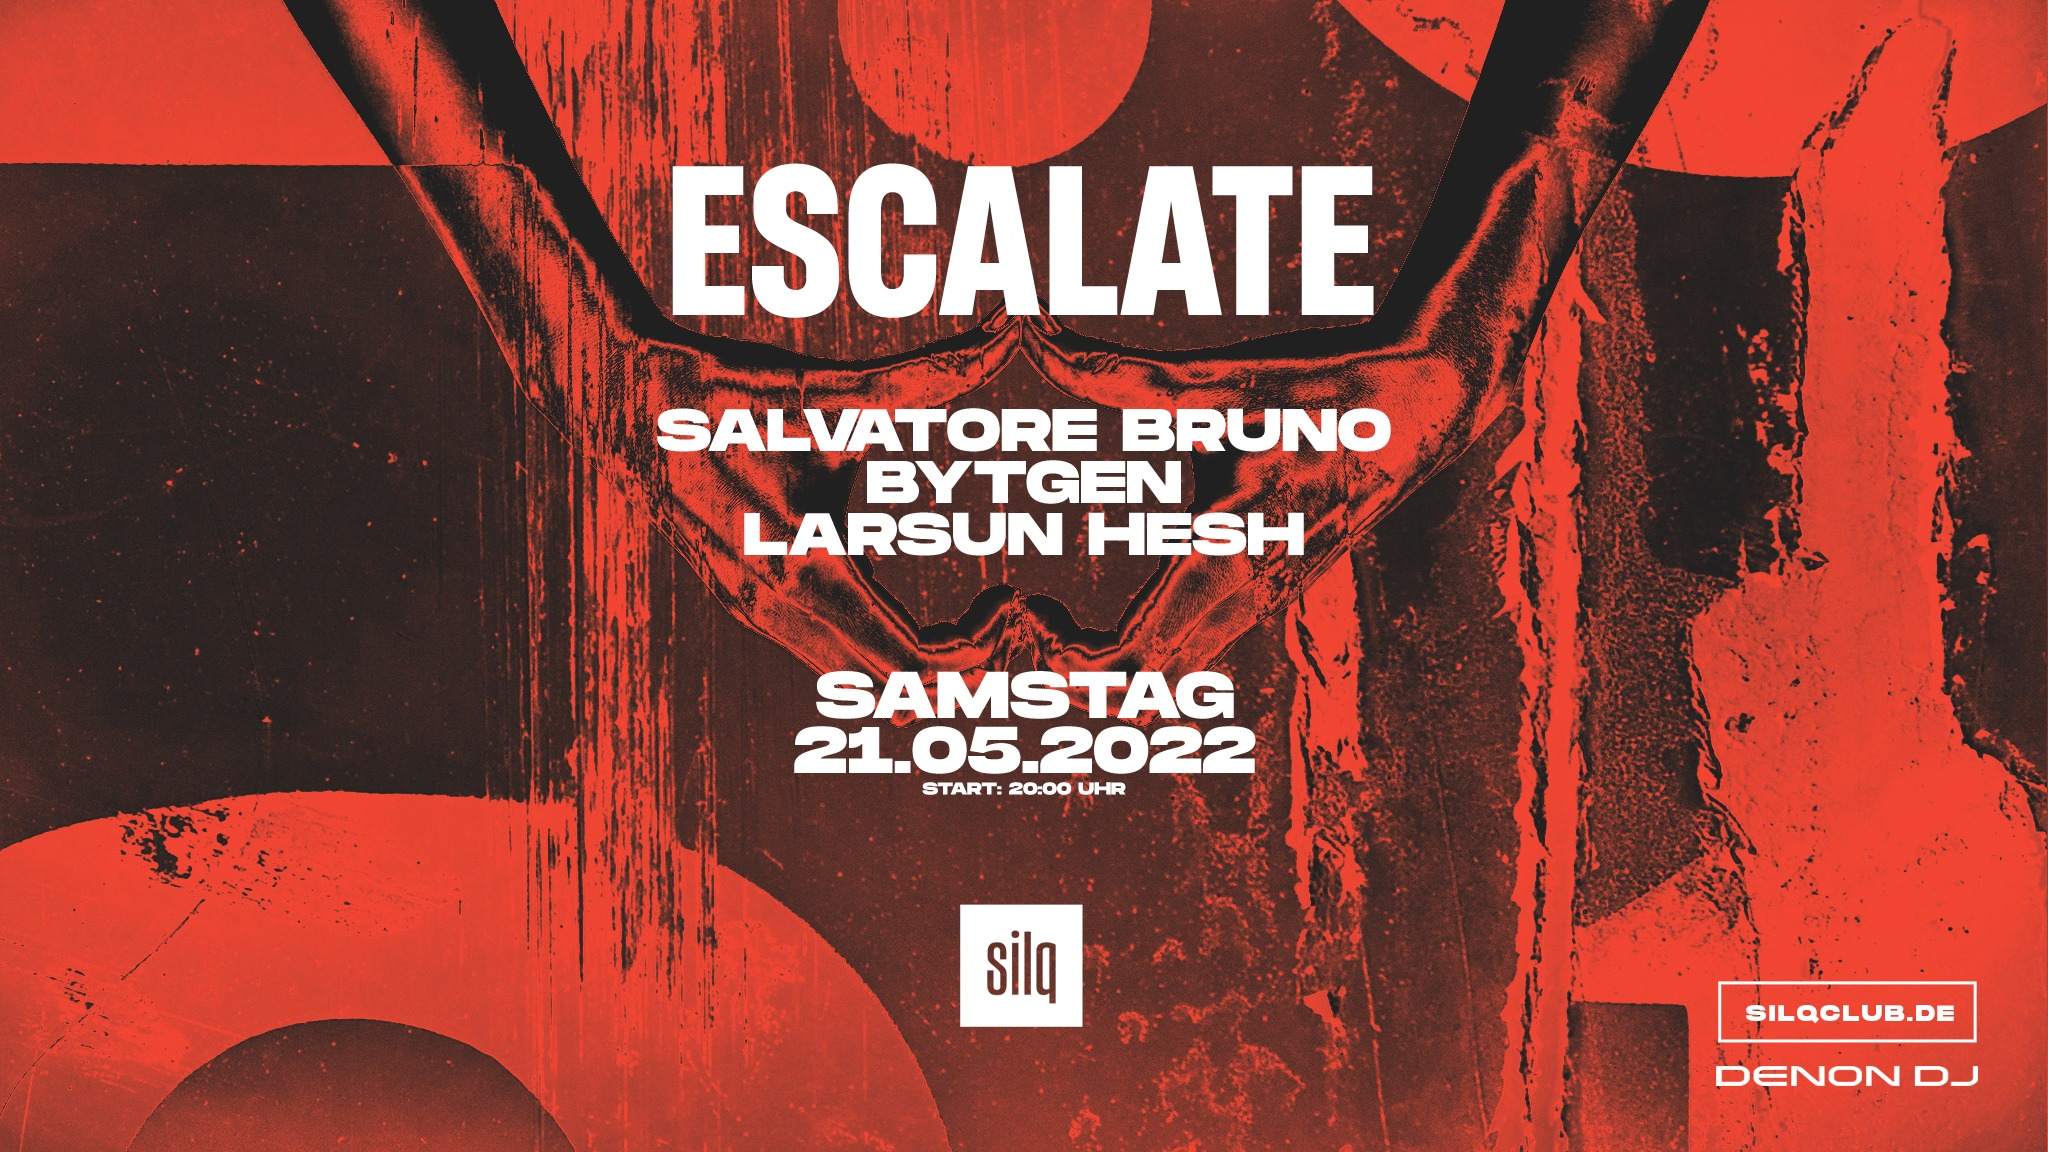 Escalate with Salvatore Bruno, Bytgen, Larsun Hesh - フライヤー表